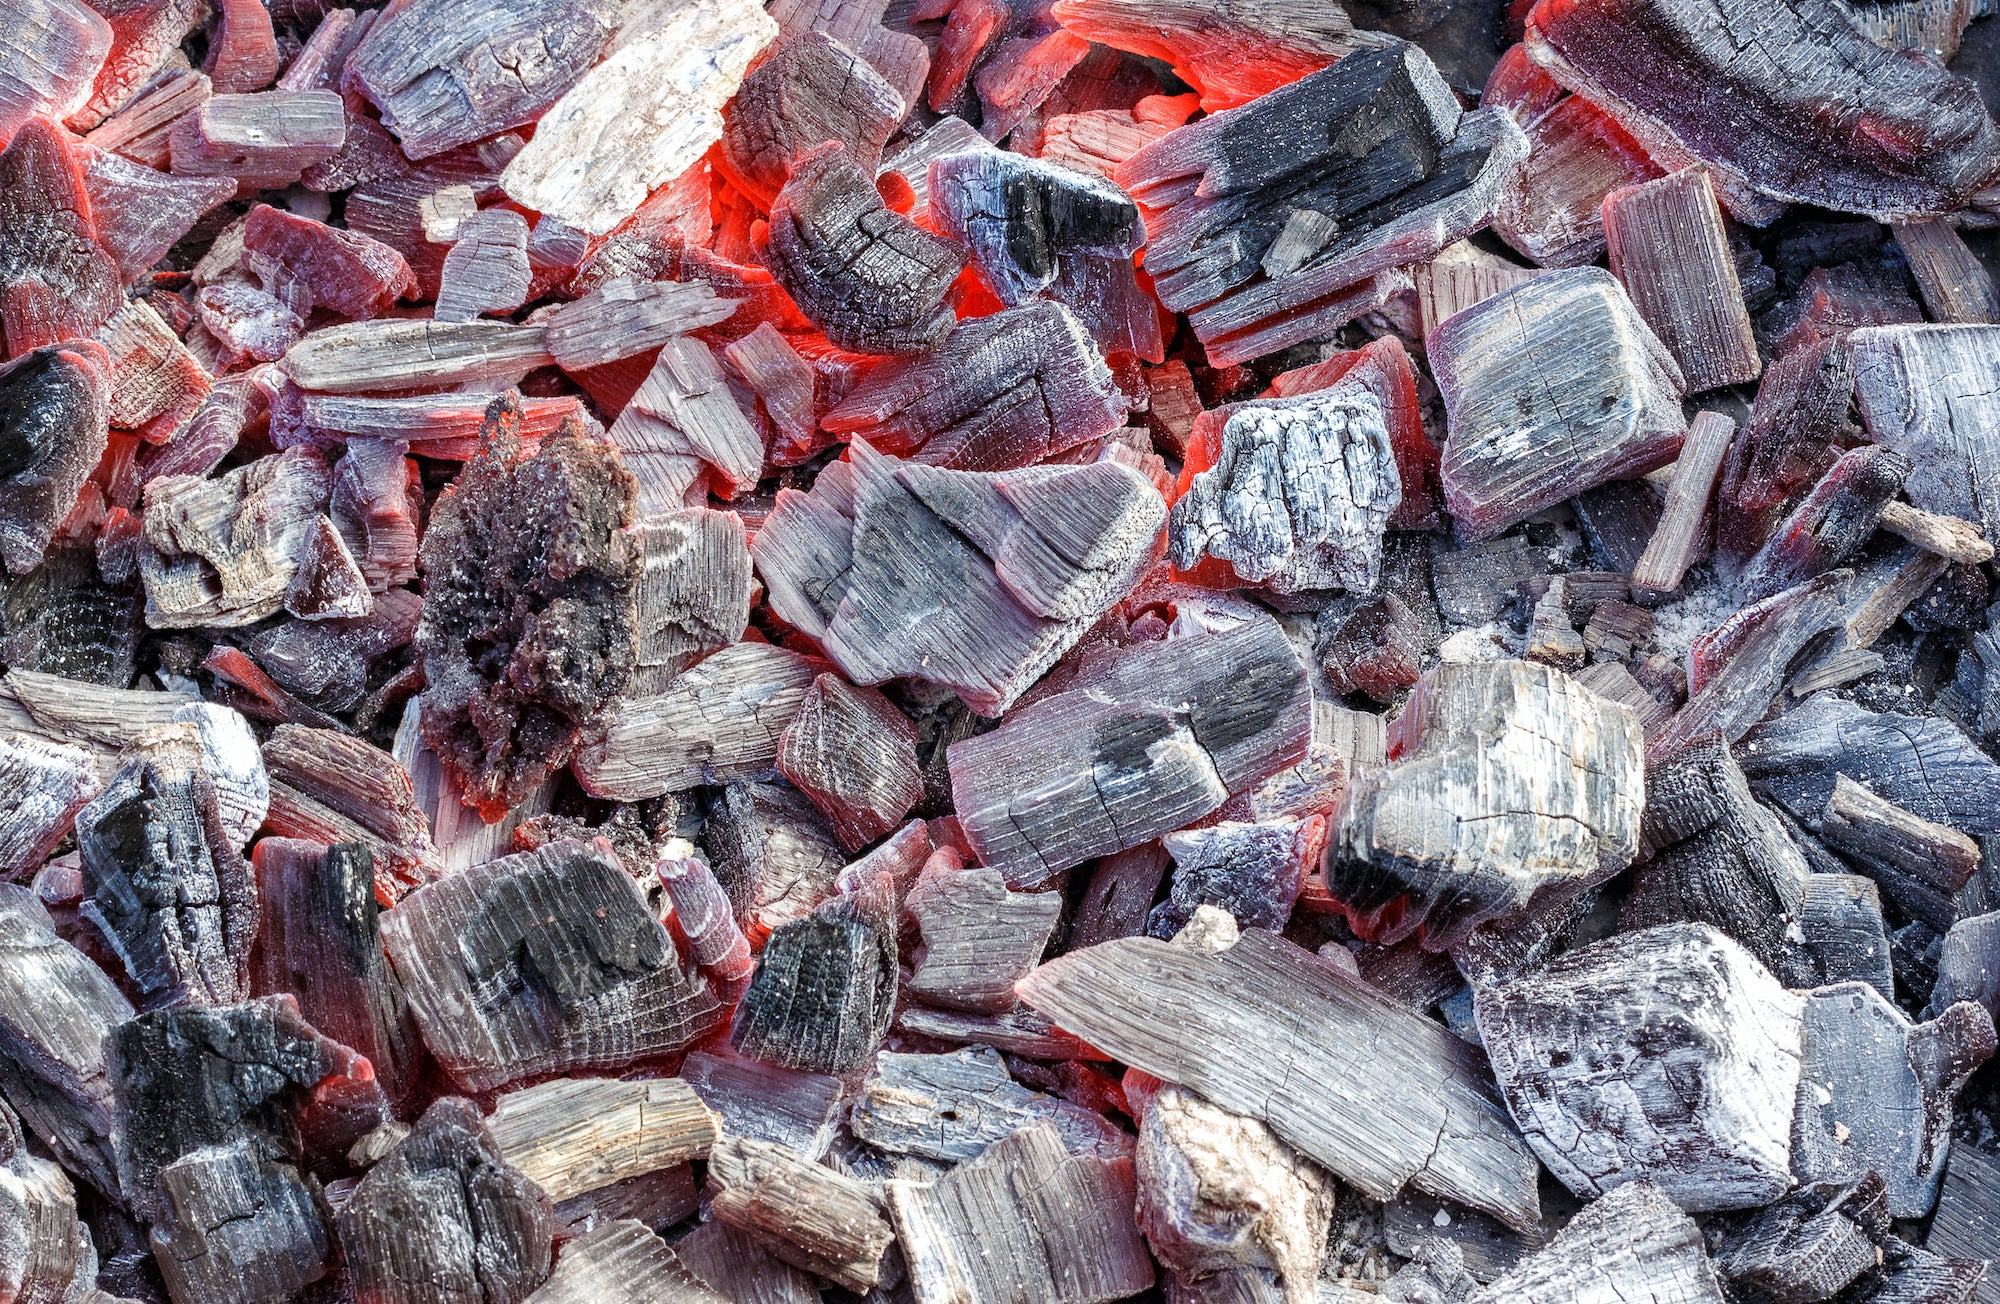 BBQ Essentials - Lumpwood Charcoal & Briquettes